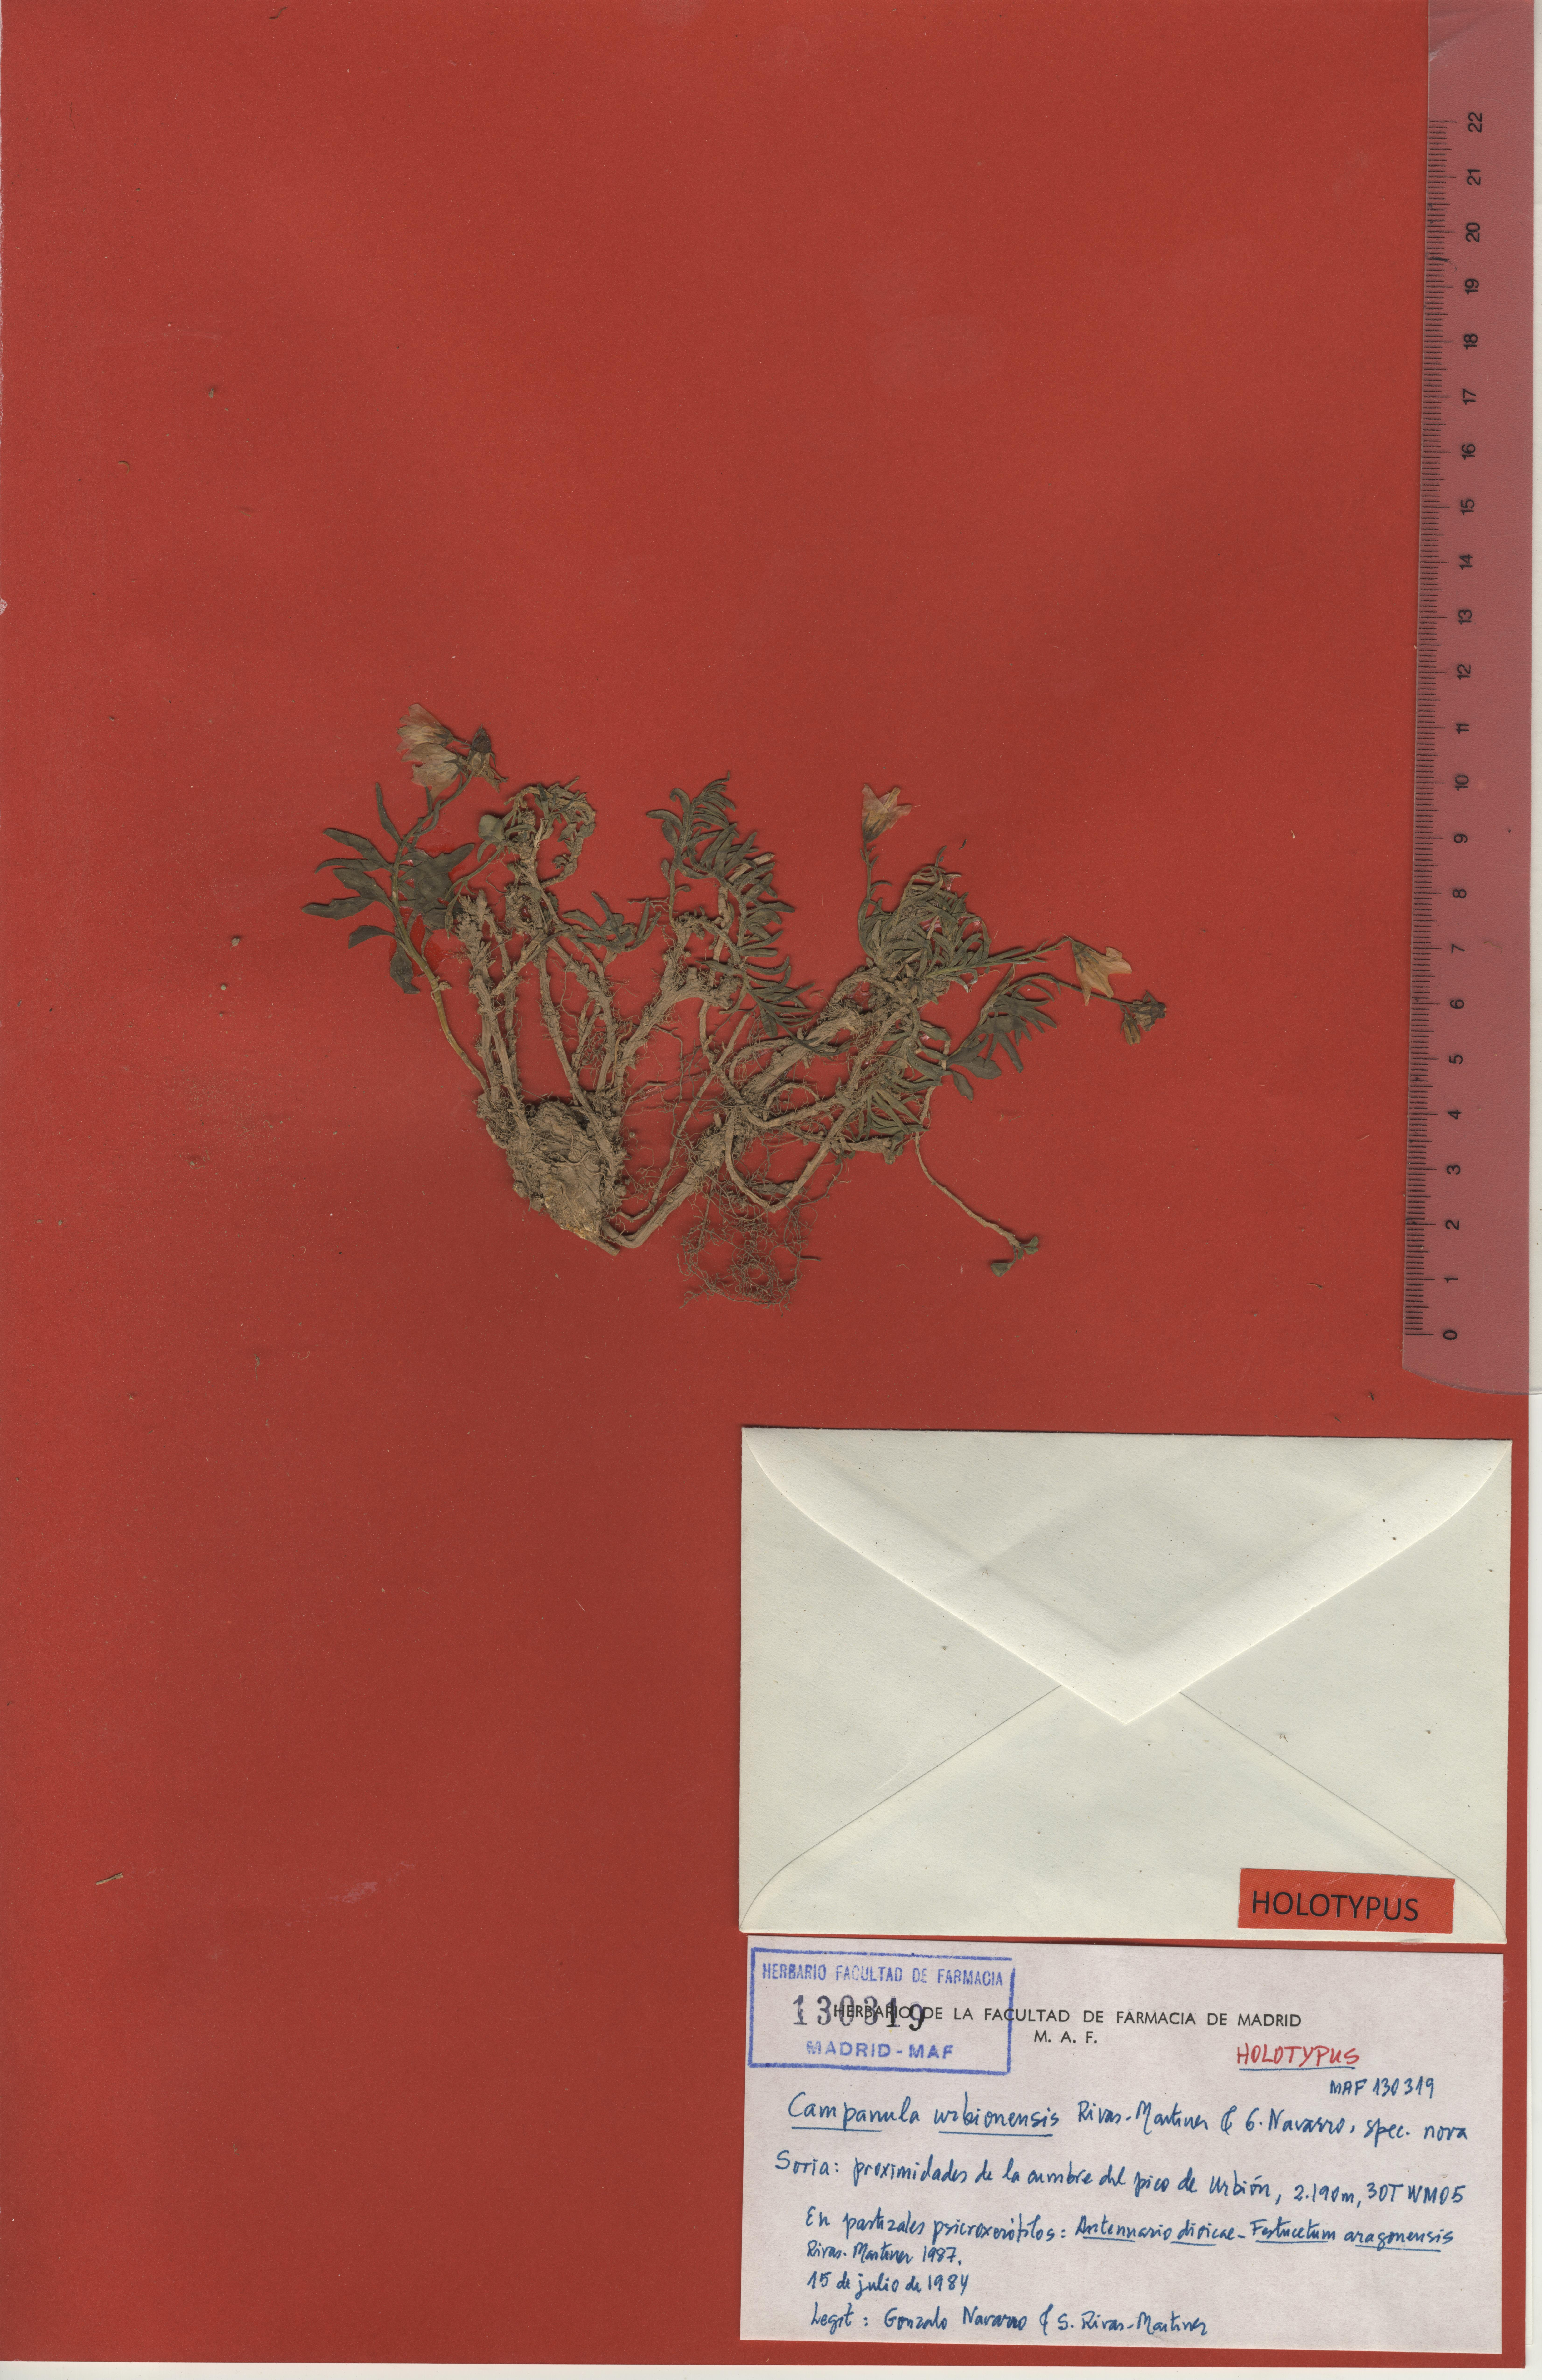 003a campanula urbionensis maf130319